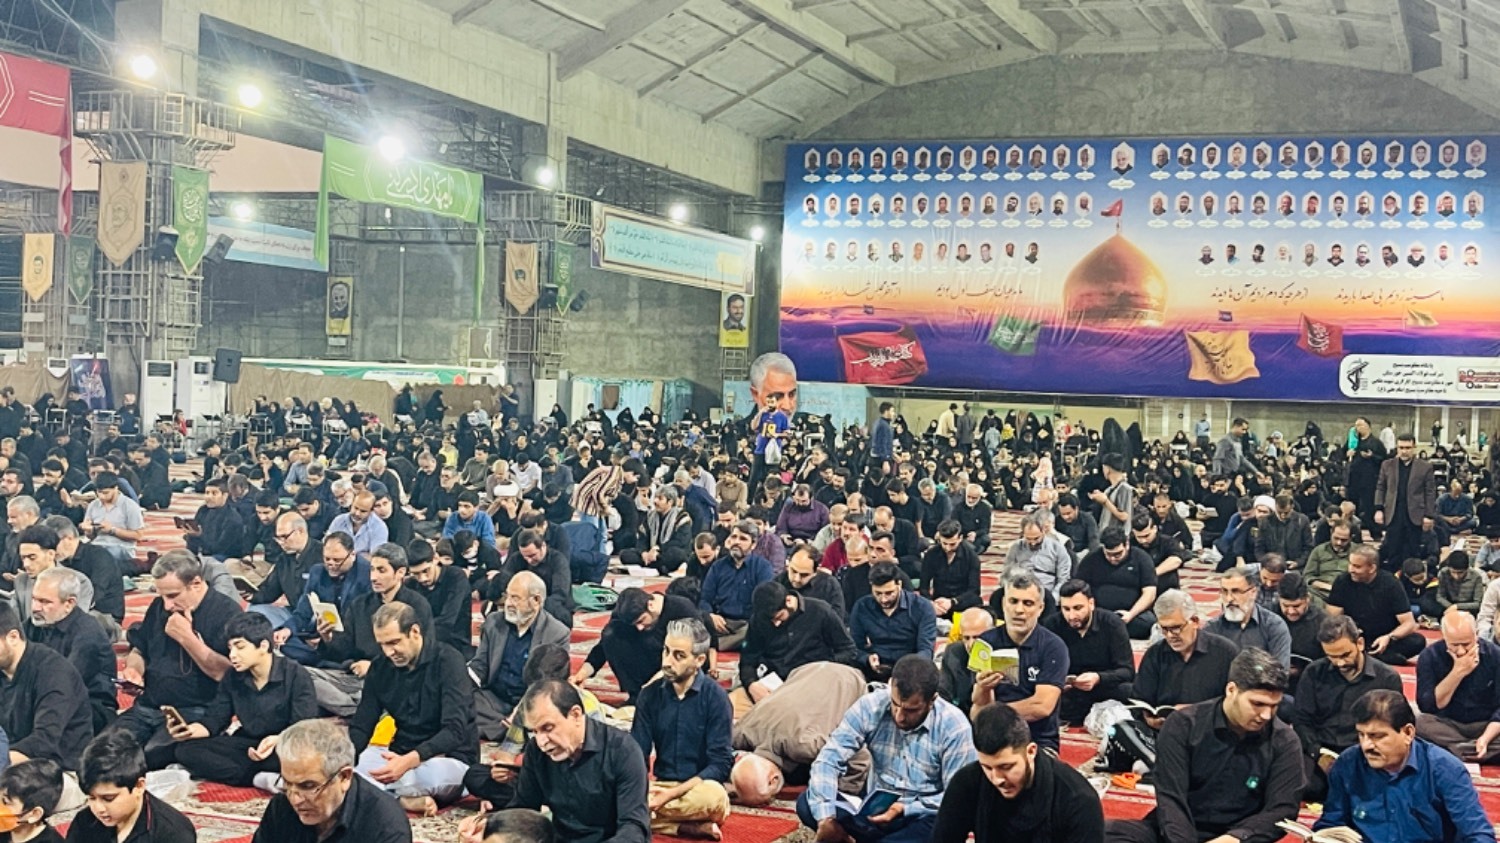 طنین نوای یا رب یارب در مراسم احیا شب قدر در خوزستان